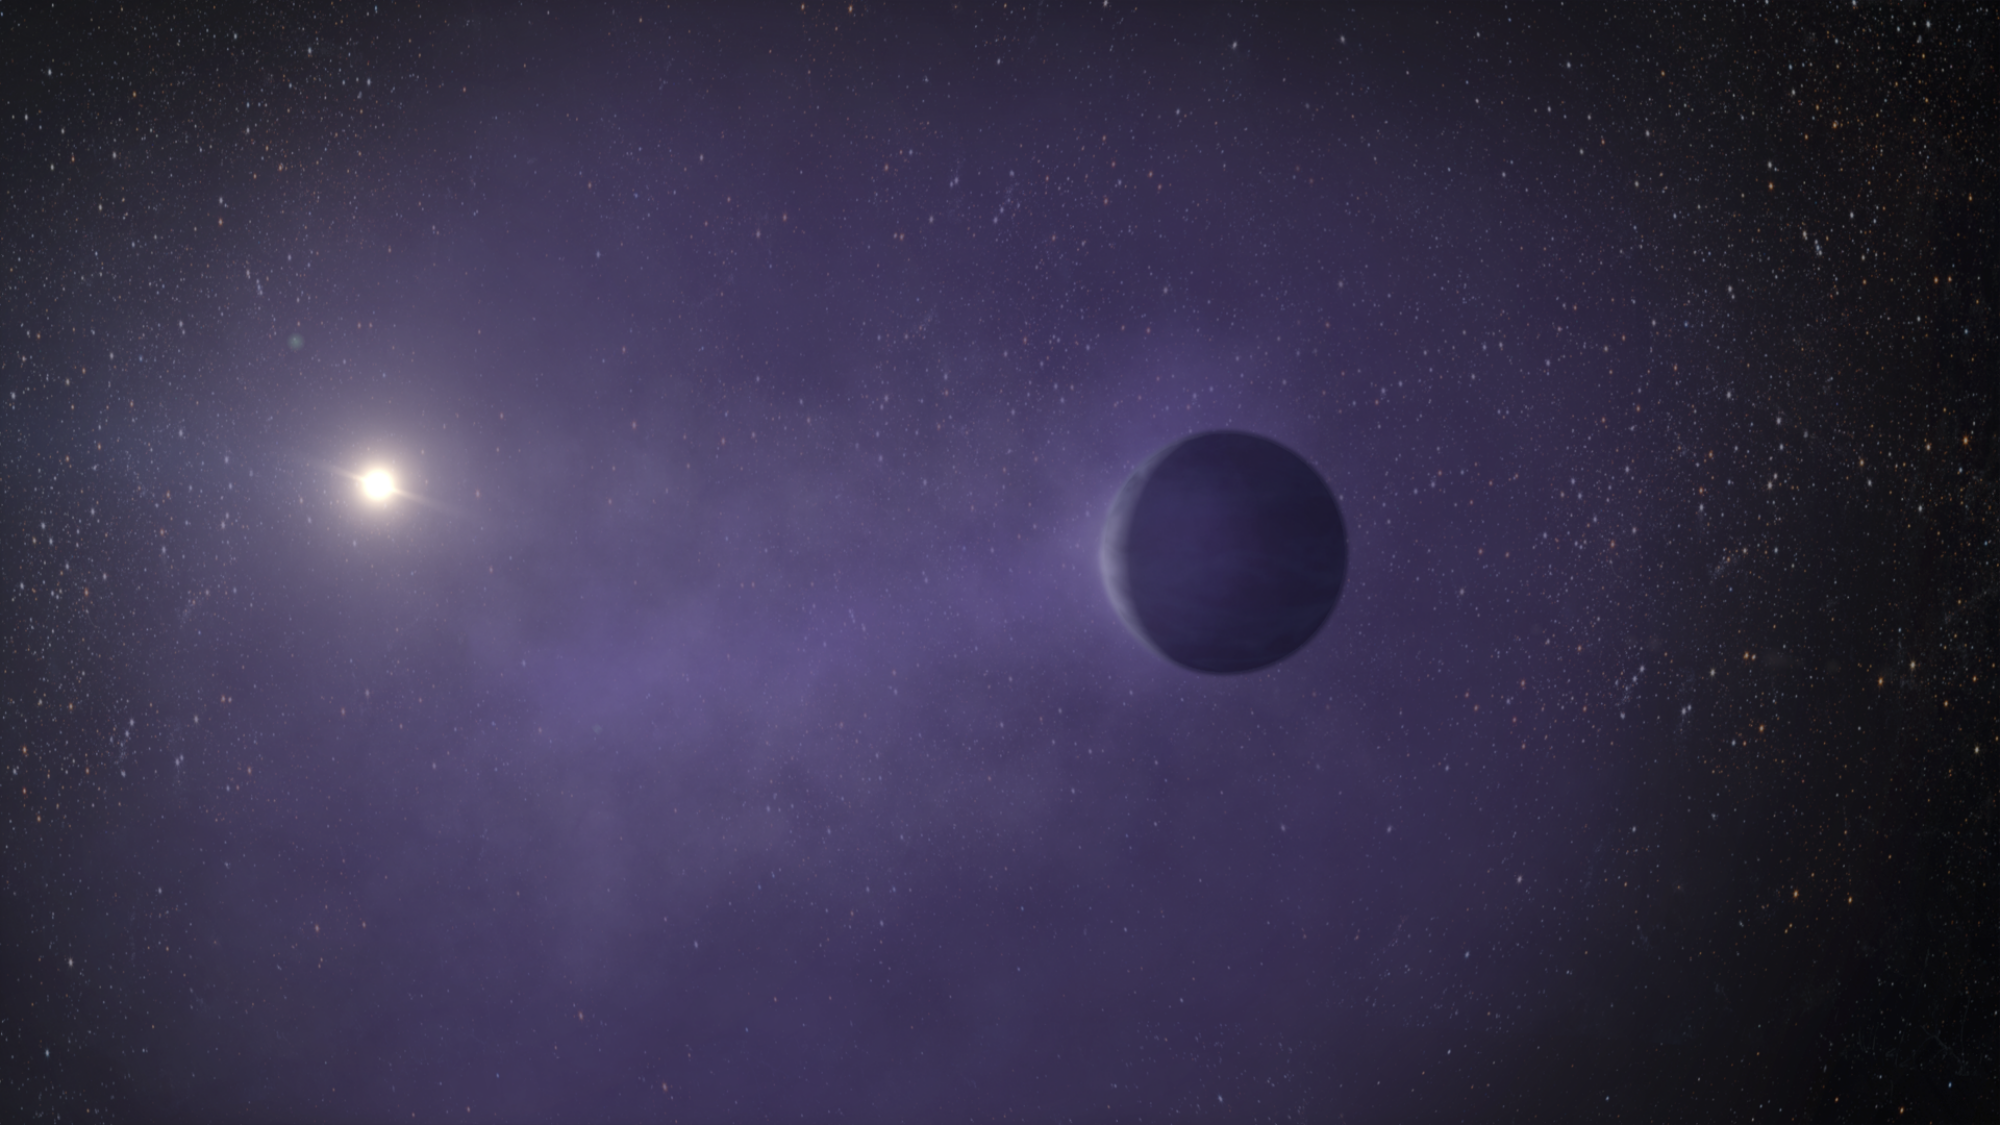 A mini Neptune orbiting a star